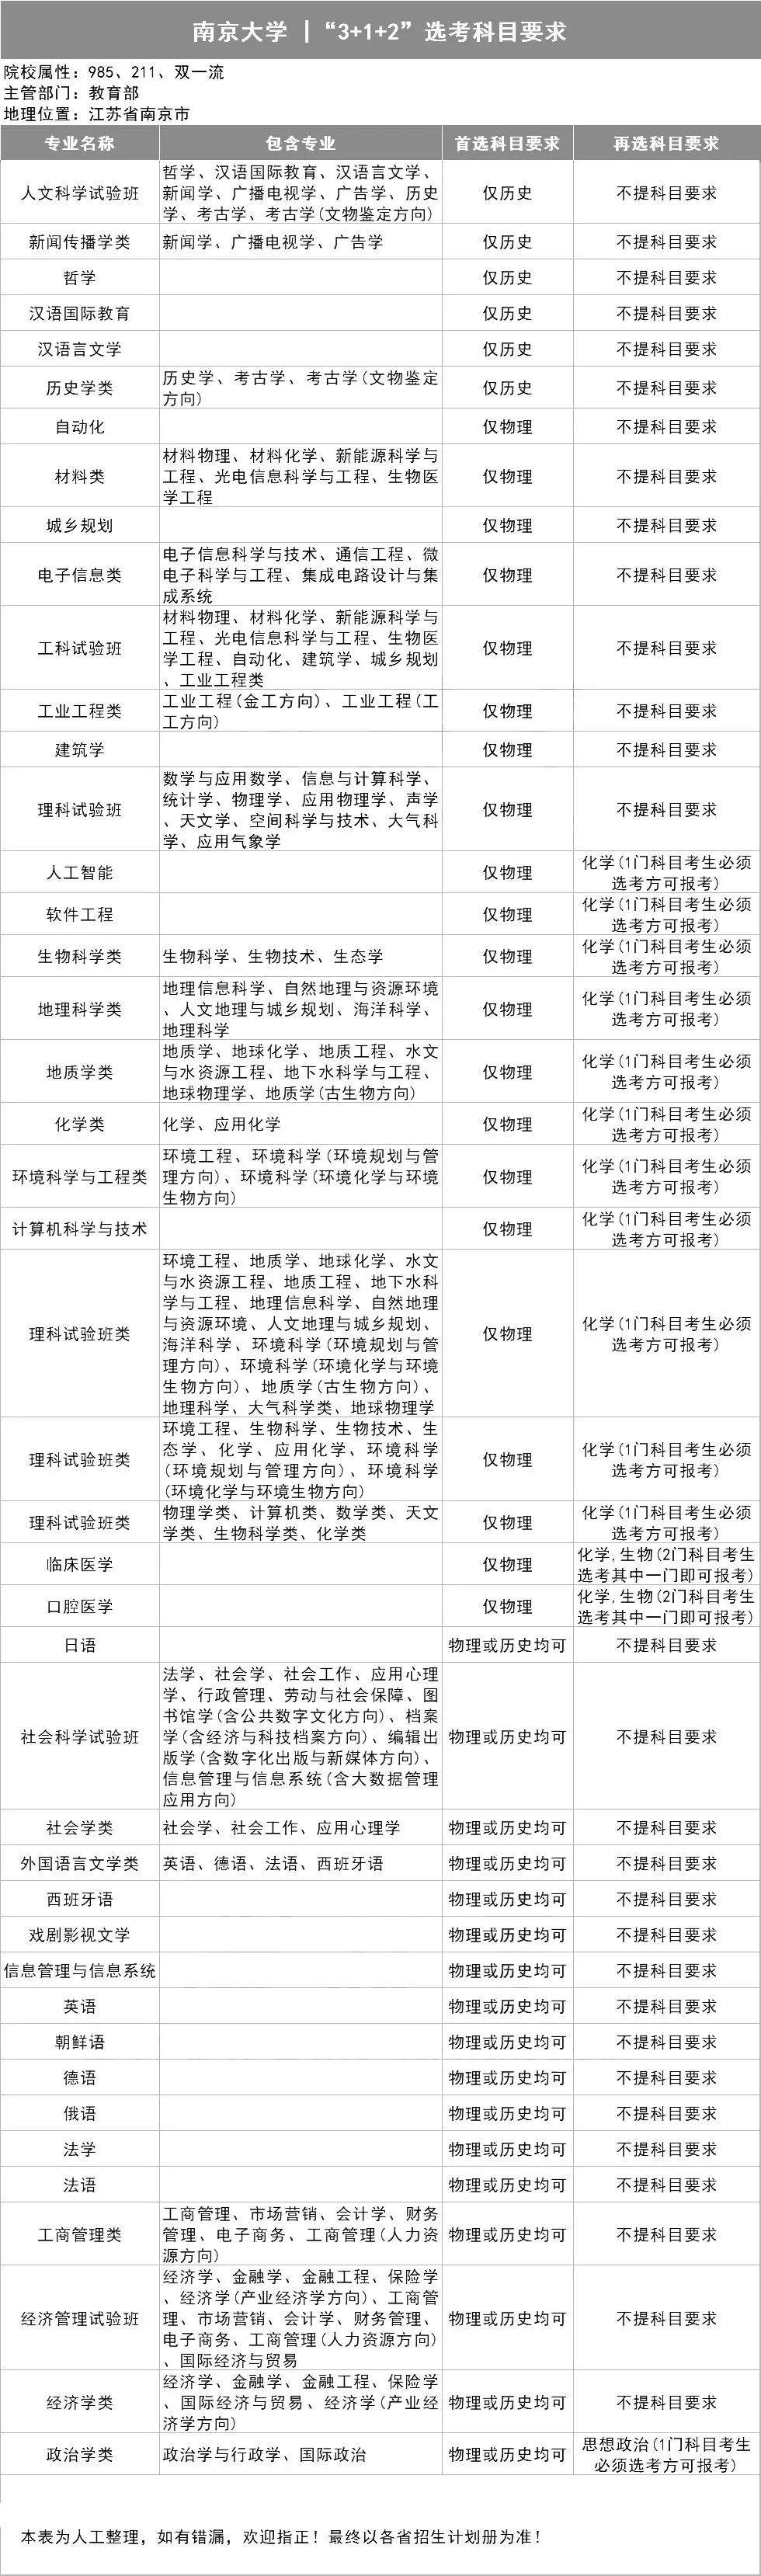 南京大學3+1+2選考科目要求